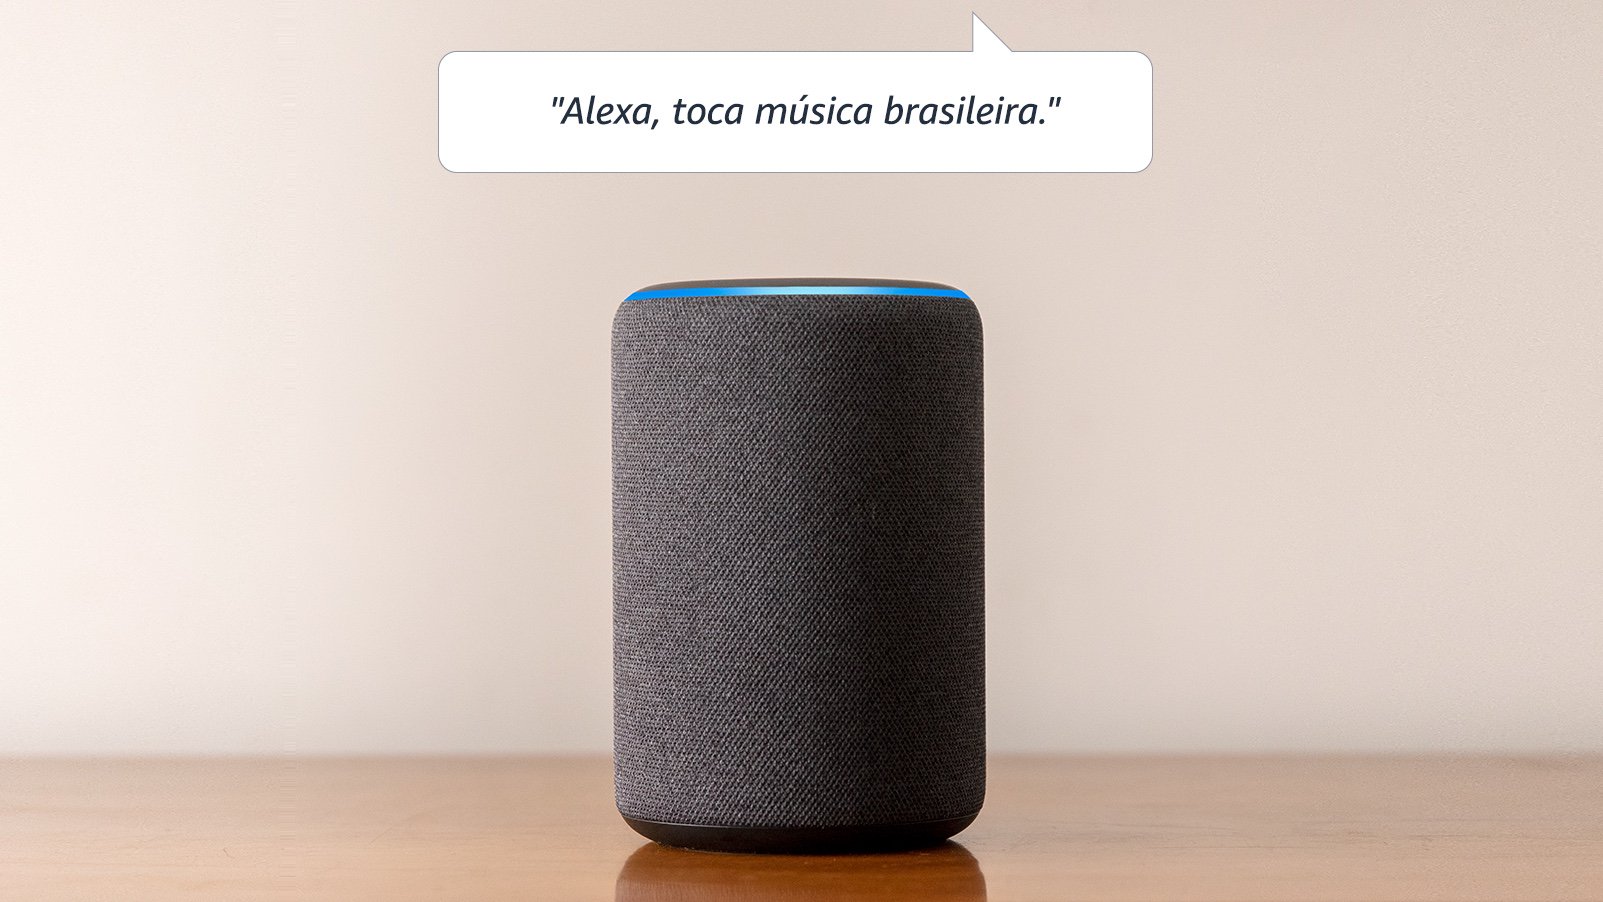 Amazon Echo e Alexa falando português do Brasil